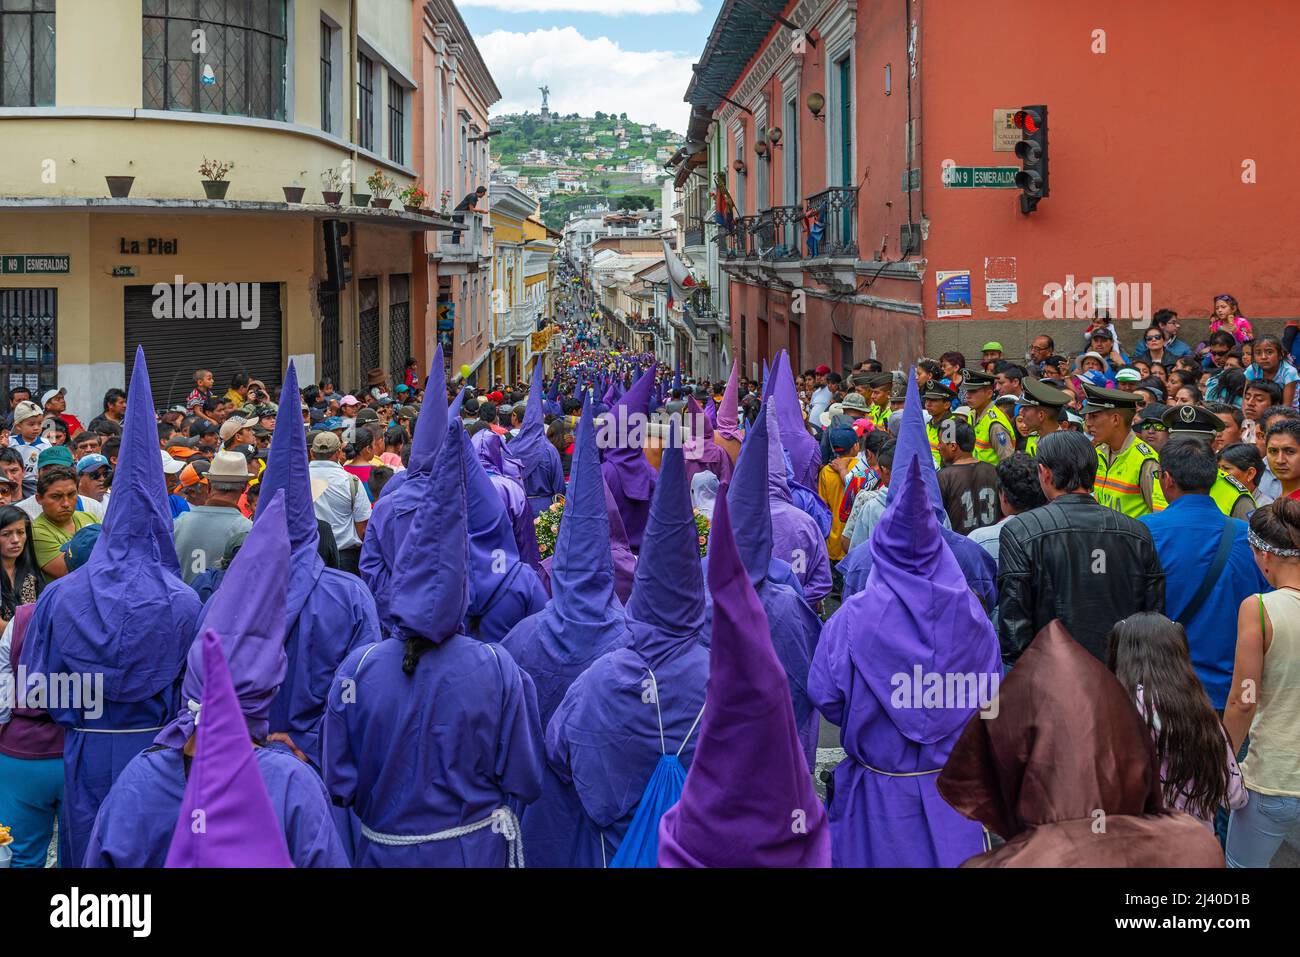 Cucurucho Büßer in traditioneller purpurner Tracht mit spitzen Hüten während der Karfreitag-Osterprozession in den Straßen von Quito, Ecuador. Stockfoto